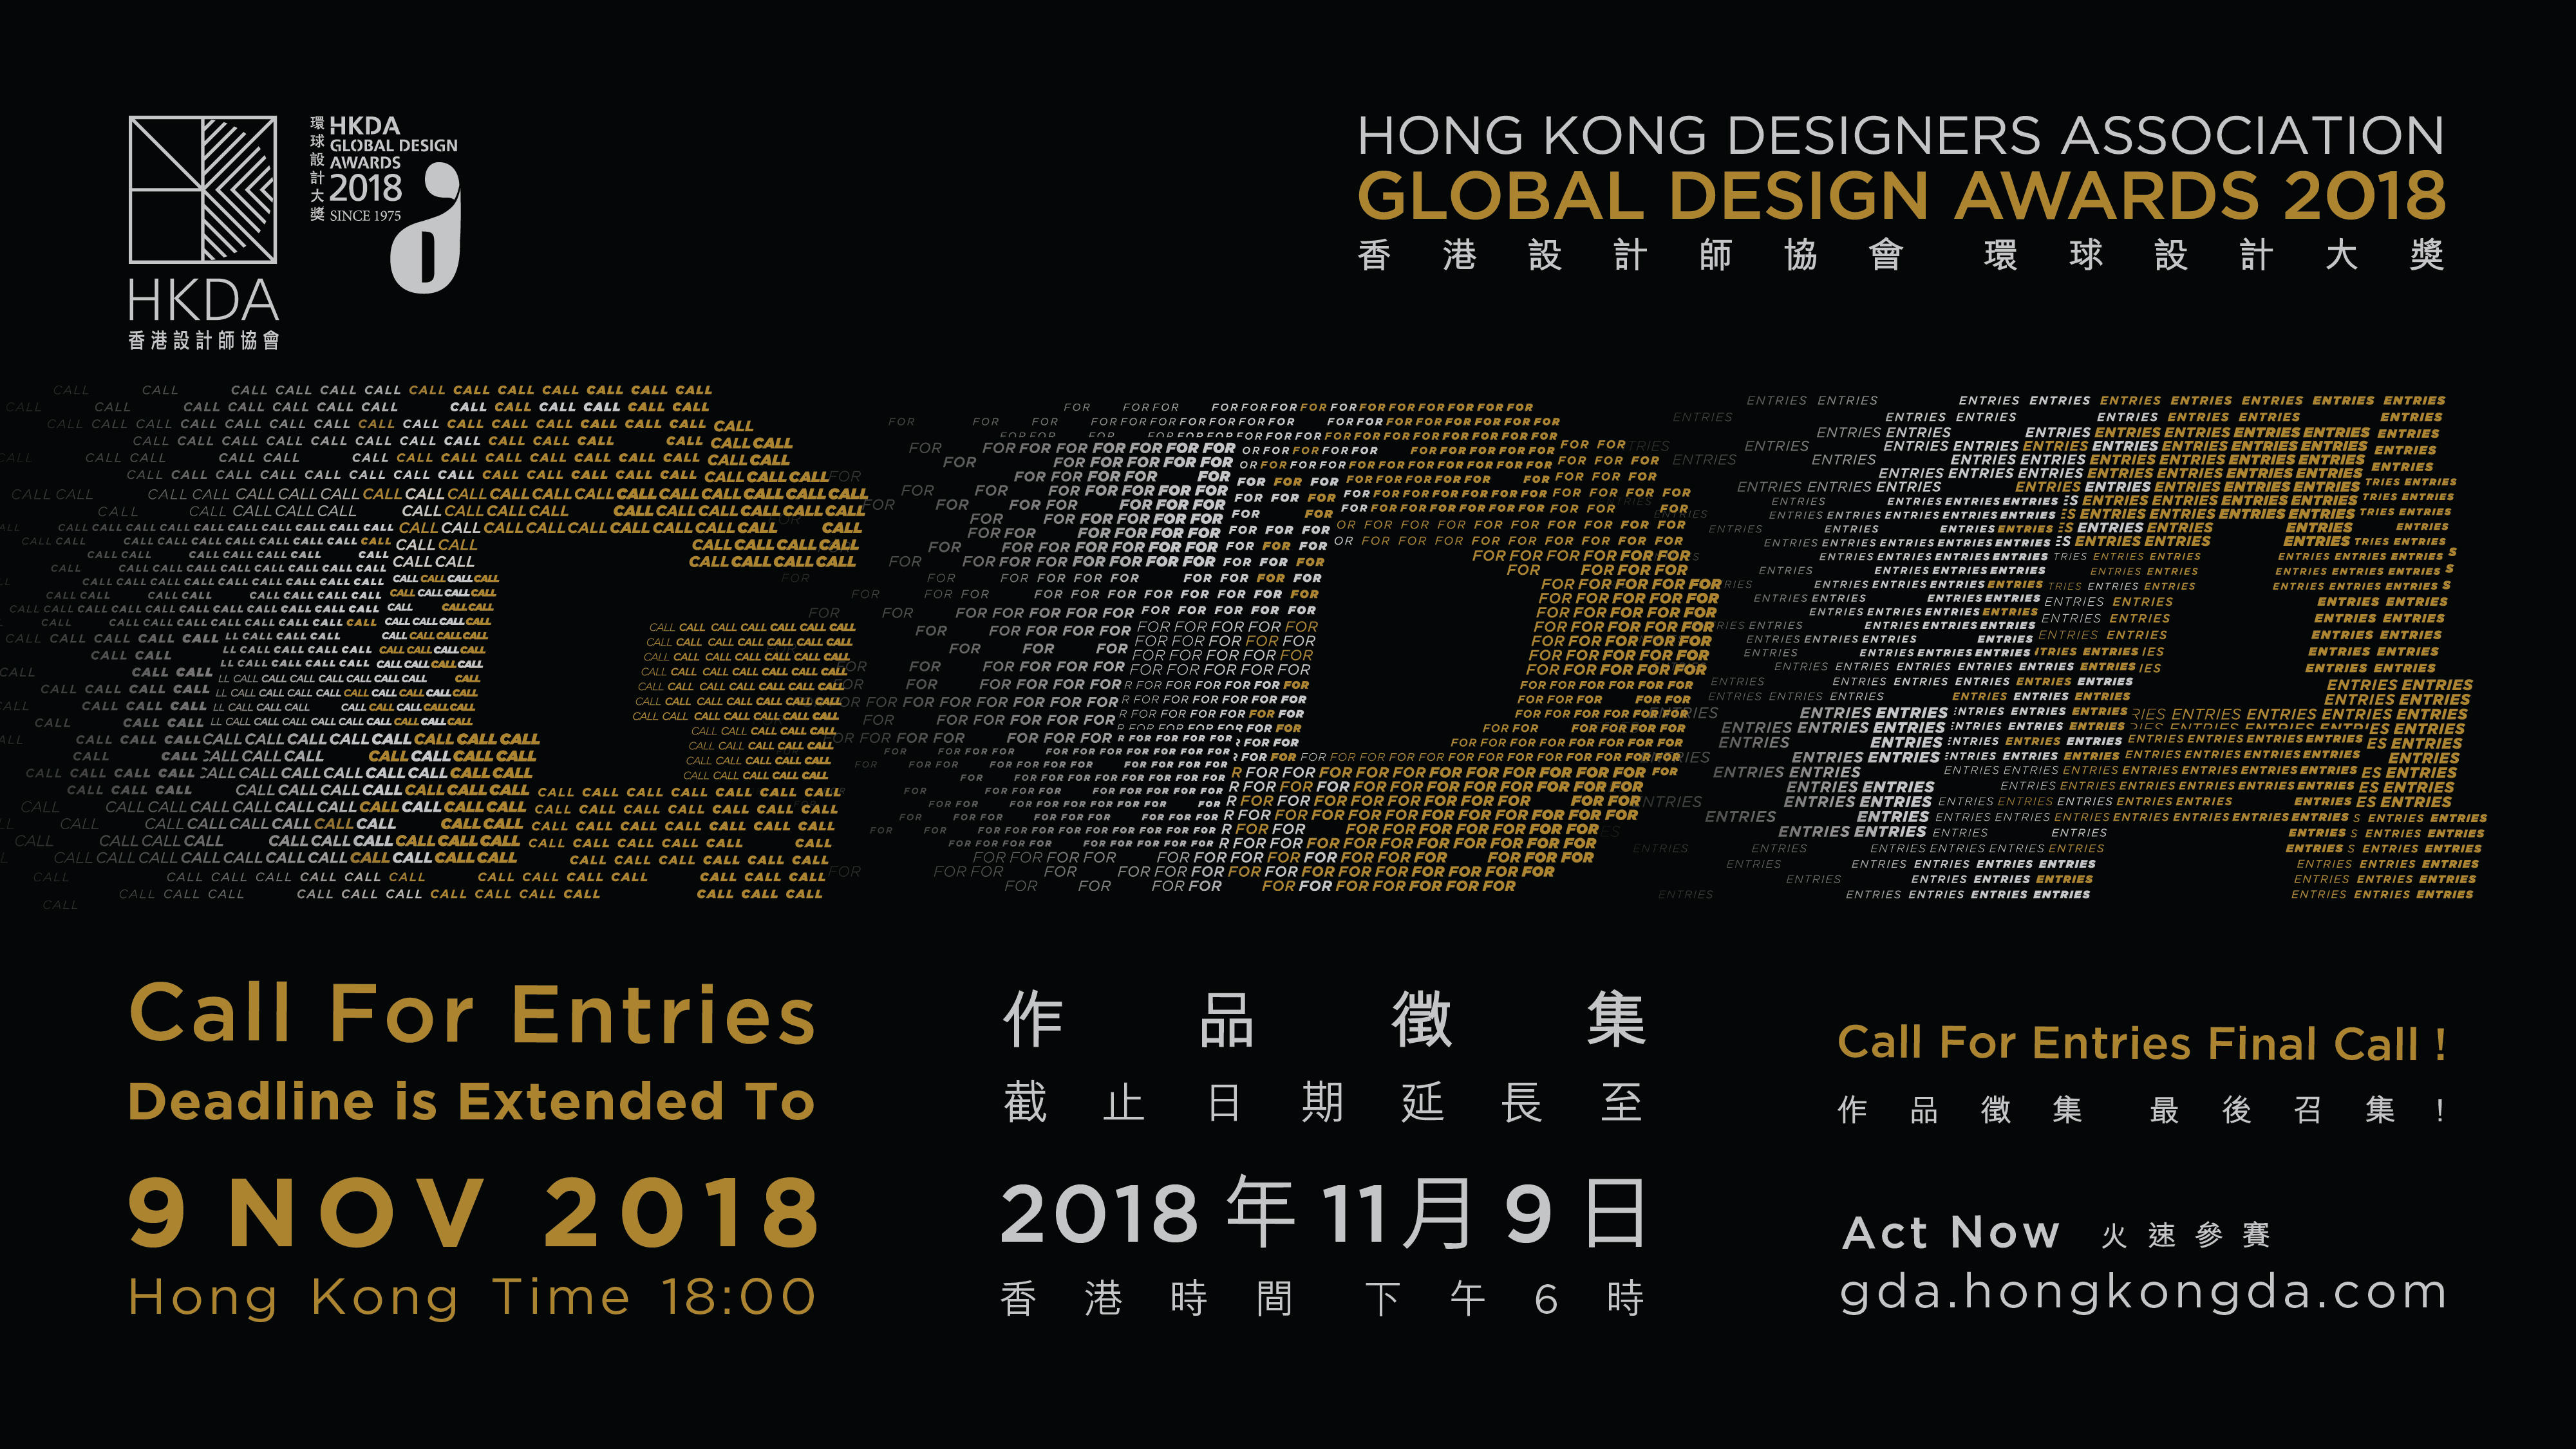 支持活動 - 「香港設計師協會環球設計大獎2018」現正接受報名